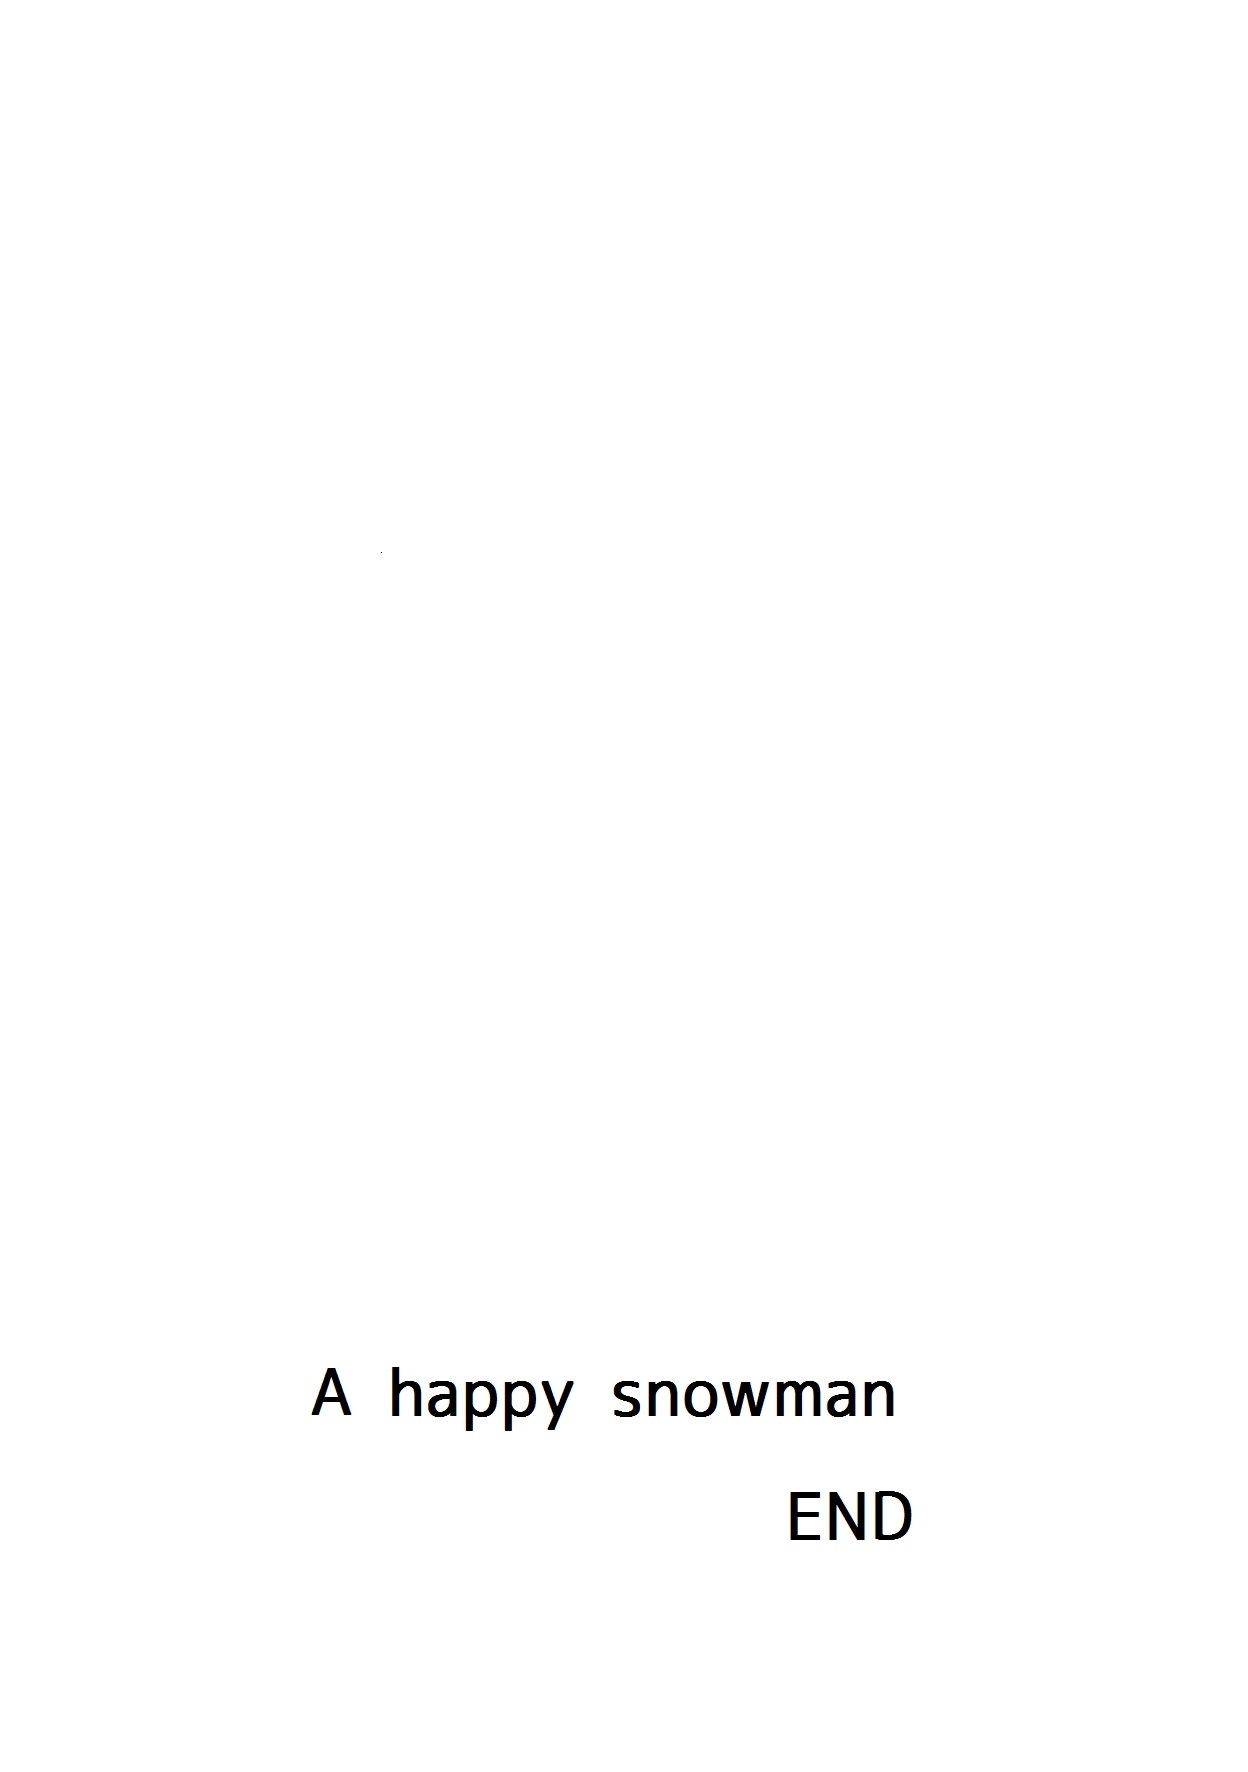 しあわせな雪だるま-幸せな雪だるま